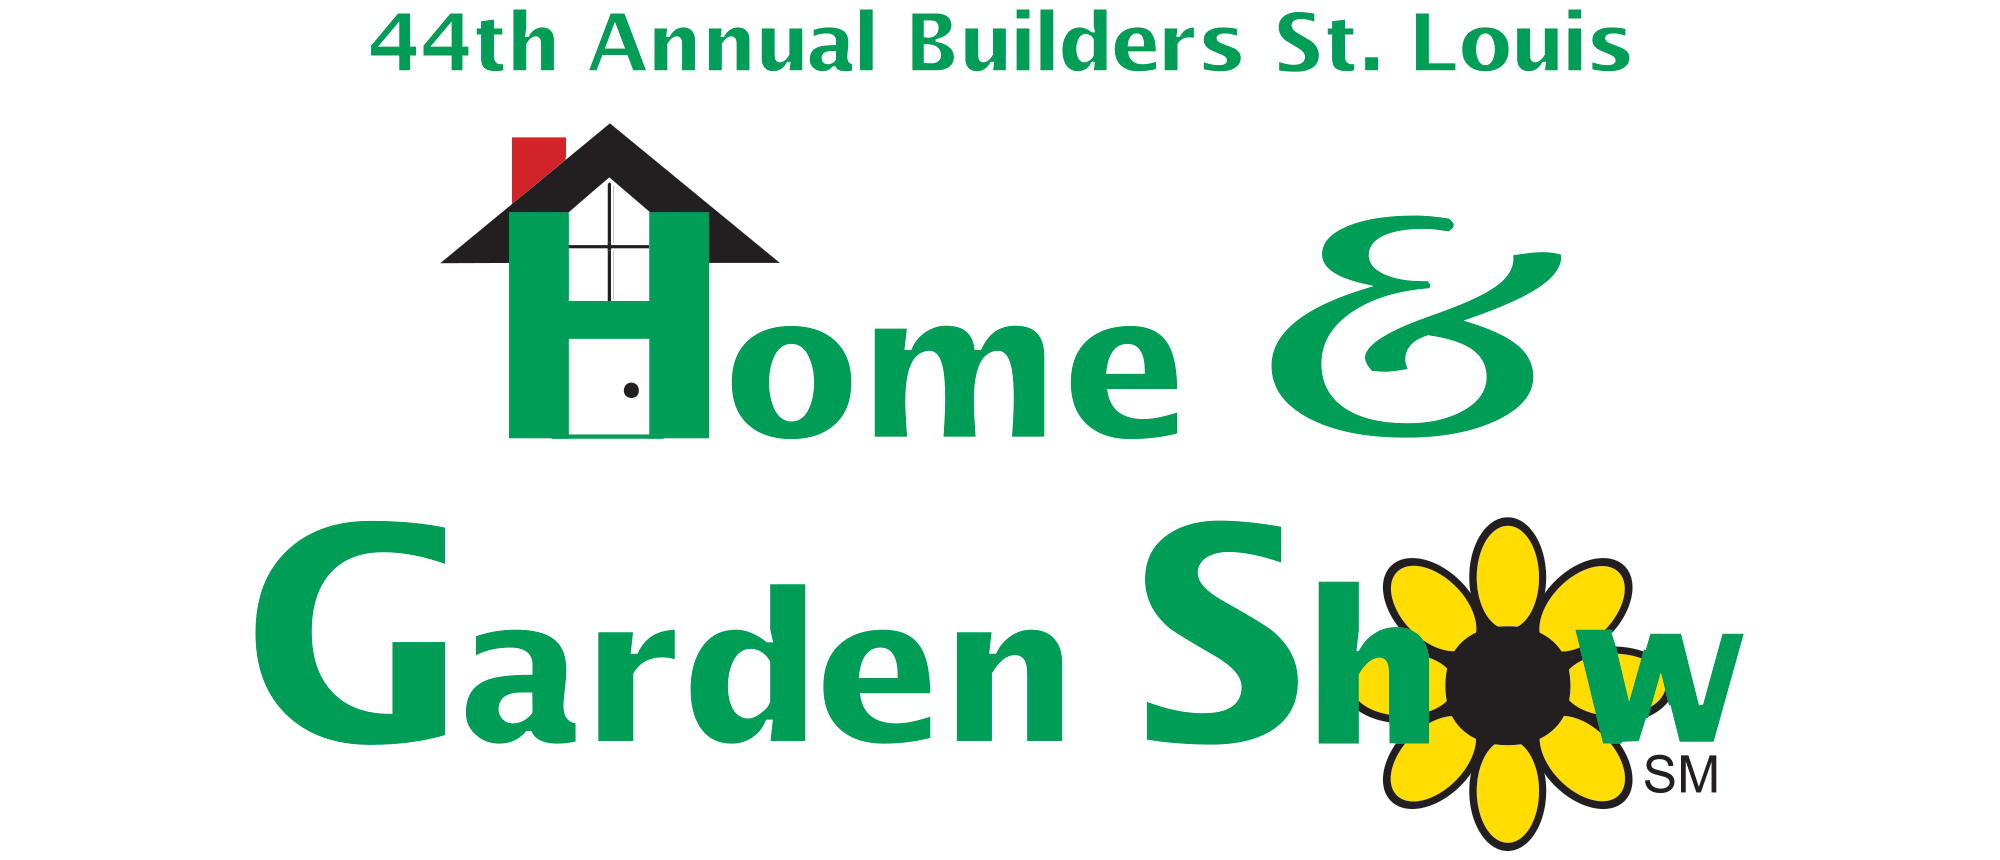  Home & Garden Show